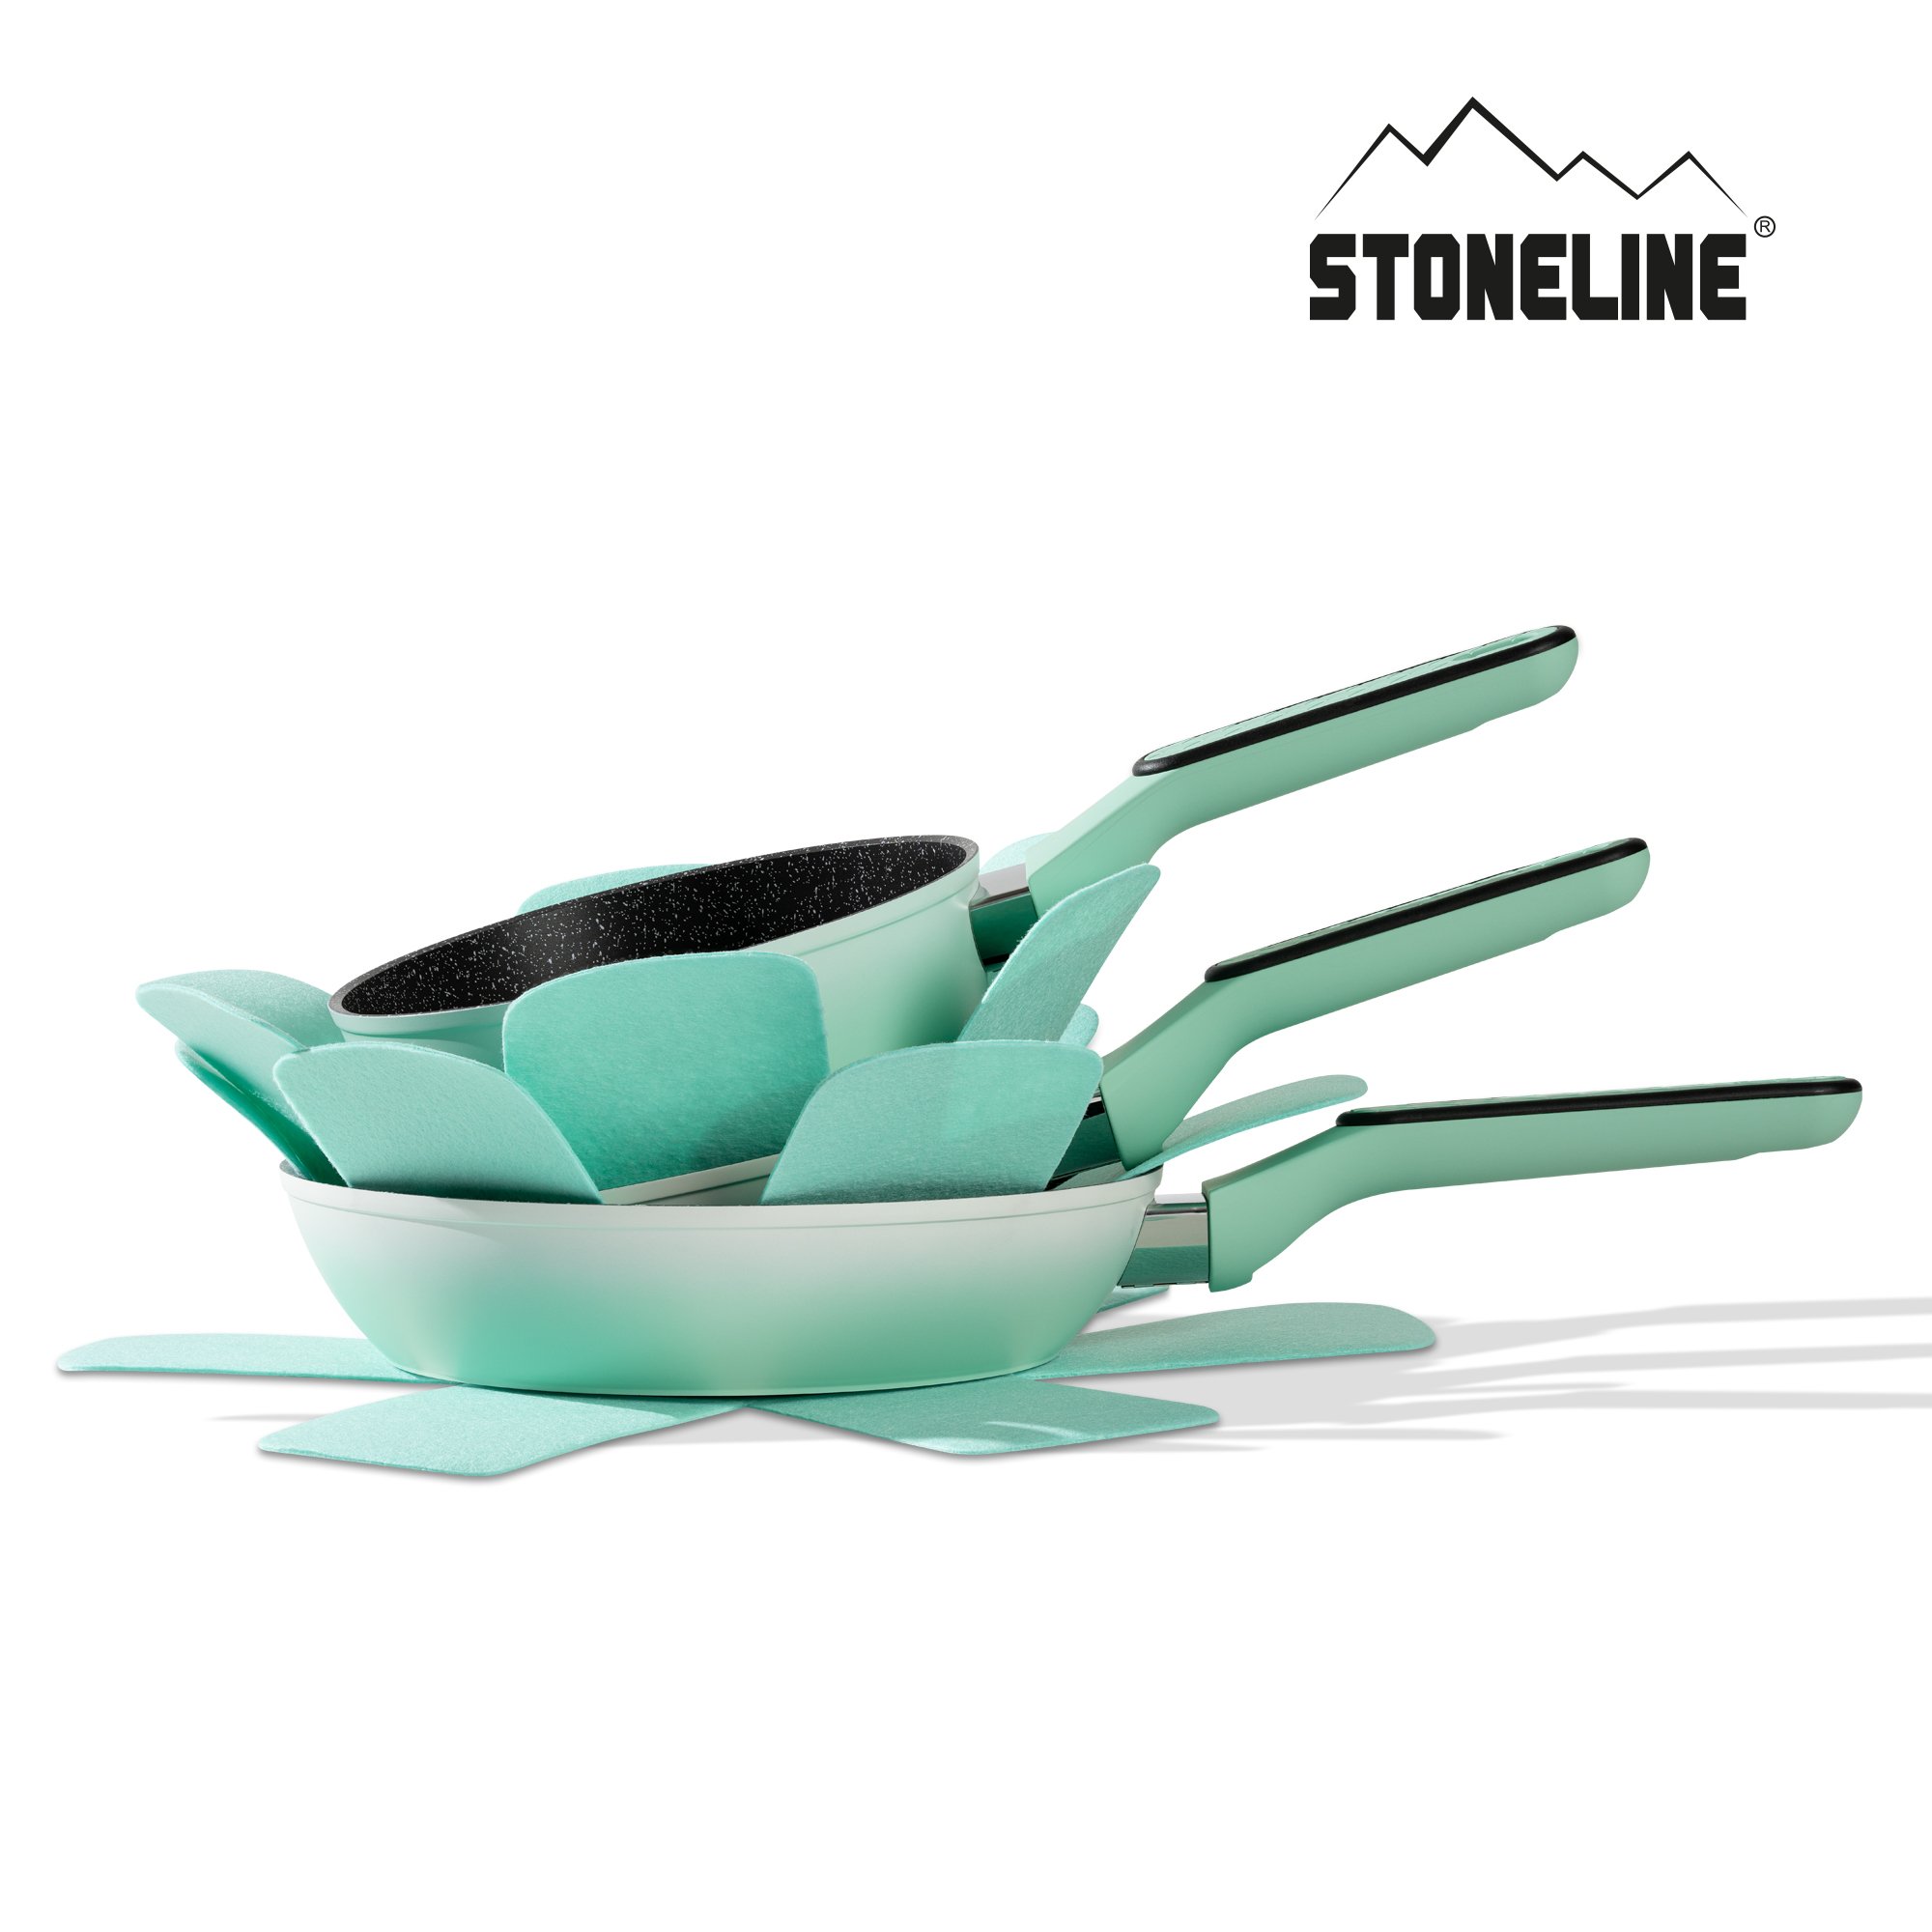 STONELINE® Mint Kochgeschirr-Set 11-teilig mit Deckeln, beschichtete Töpfe & Pfannen